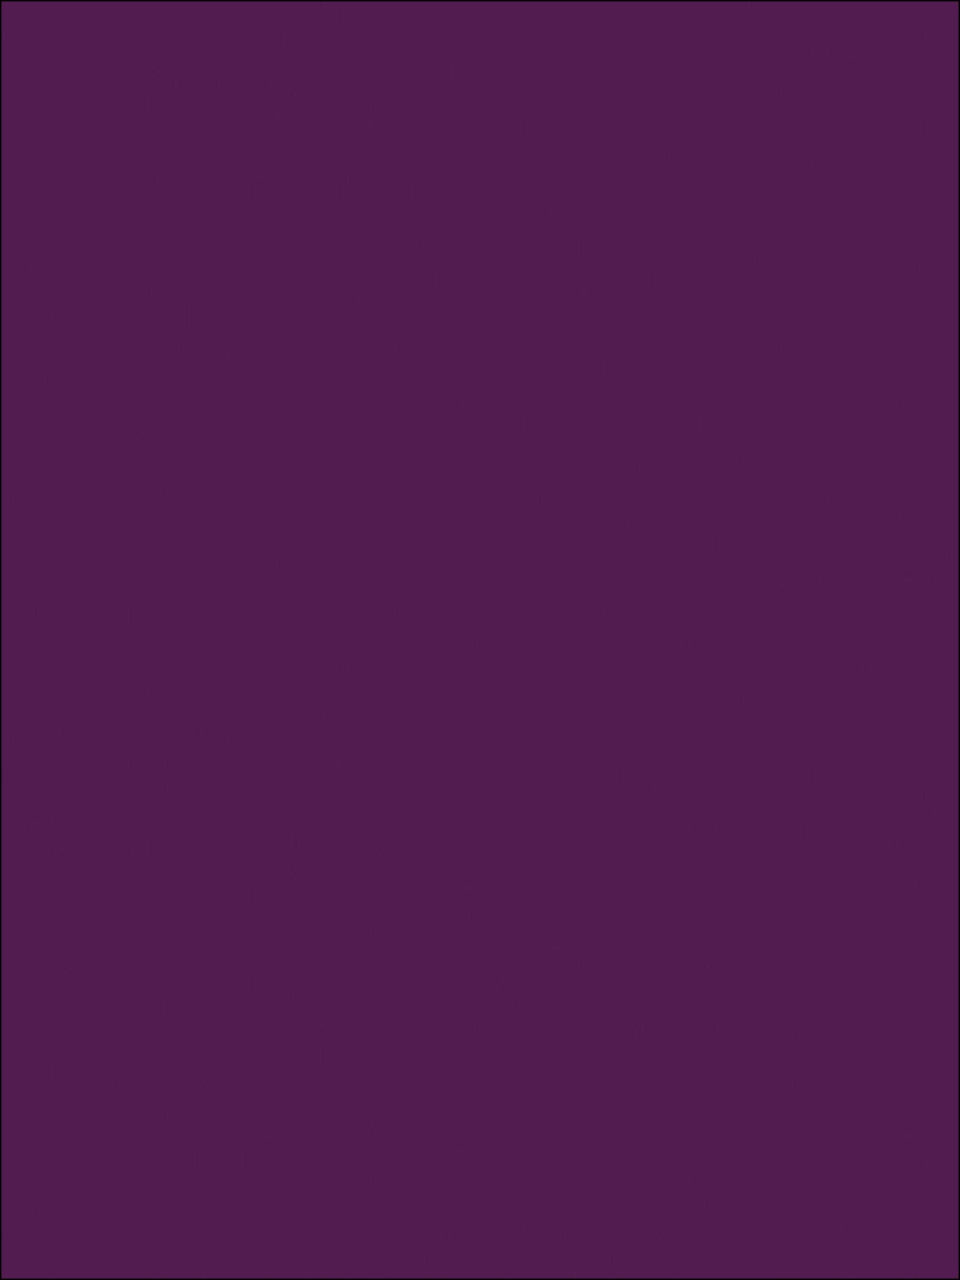 МДФ панель 6075 Фиолетовый глянец  2800х1220х18 mm 